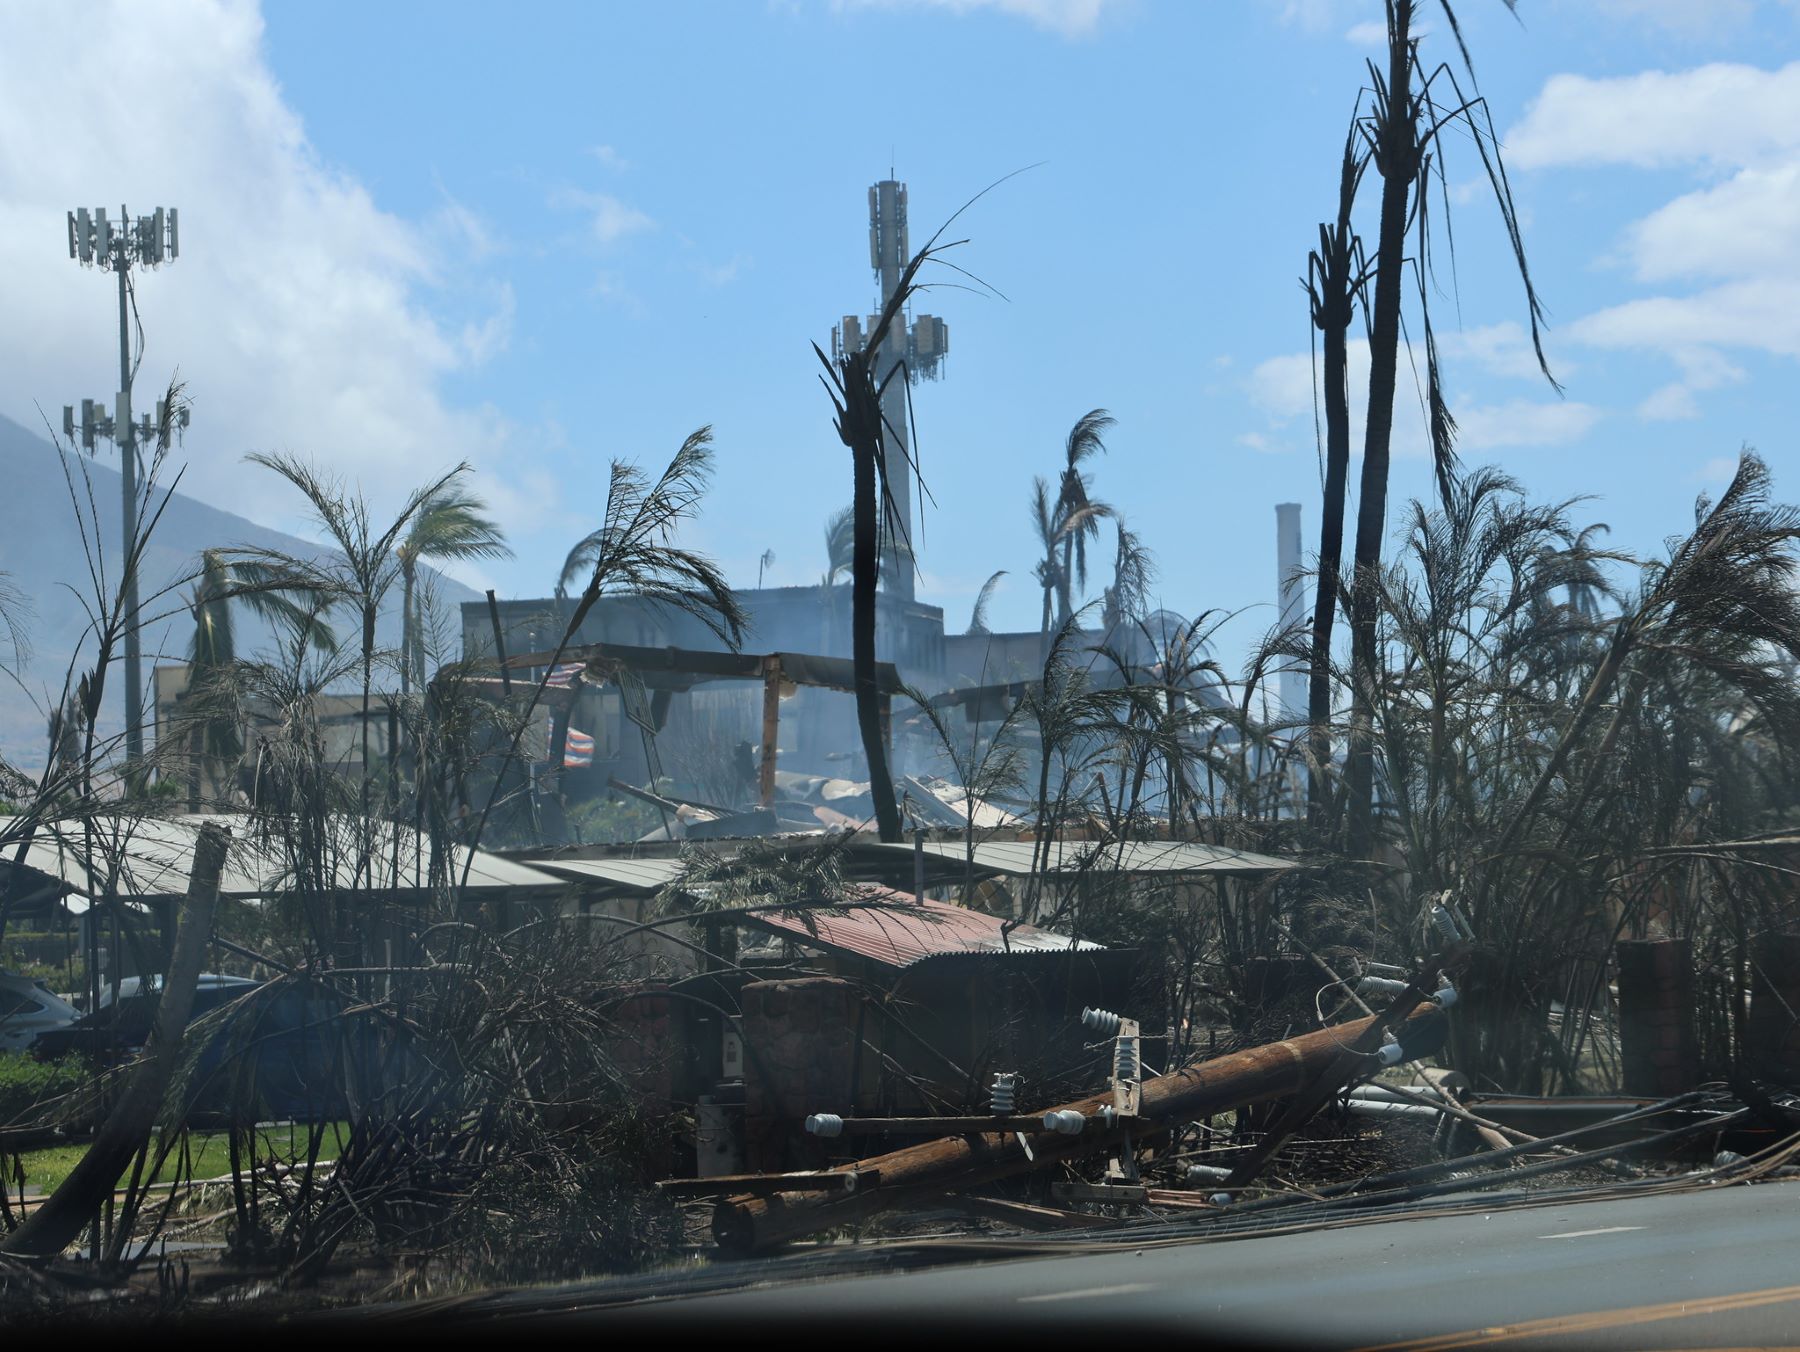 Casas e árvores destruídas pelo fogo no Havaí: centenas de famílias desabrigadas, moradores sem energia e água potável (Foto: Governo do Havaí)